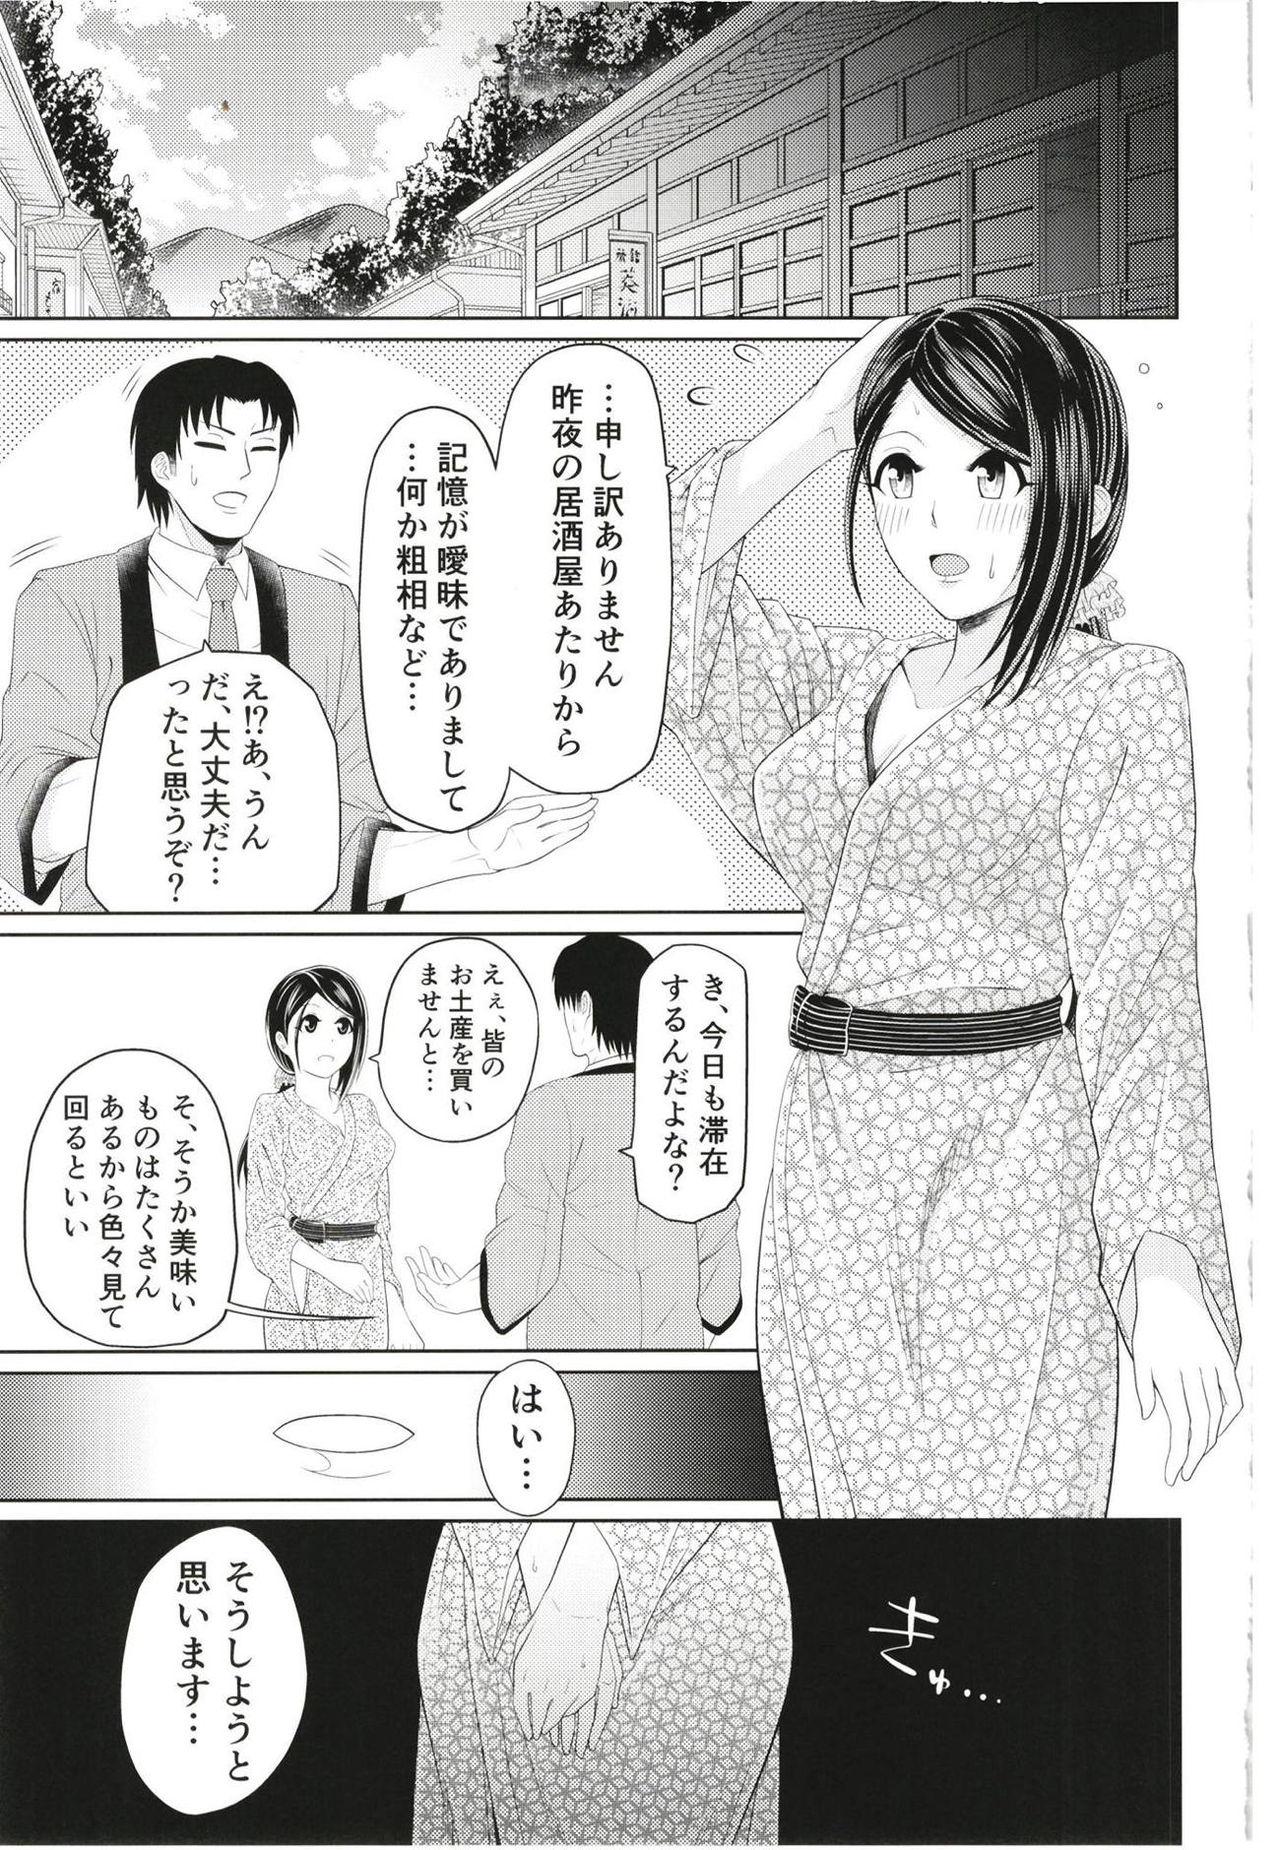 8teen Yamato Yukemuri Bojou - The idolmaster Tats - Page 24